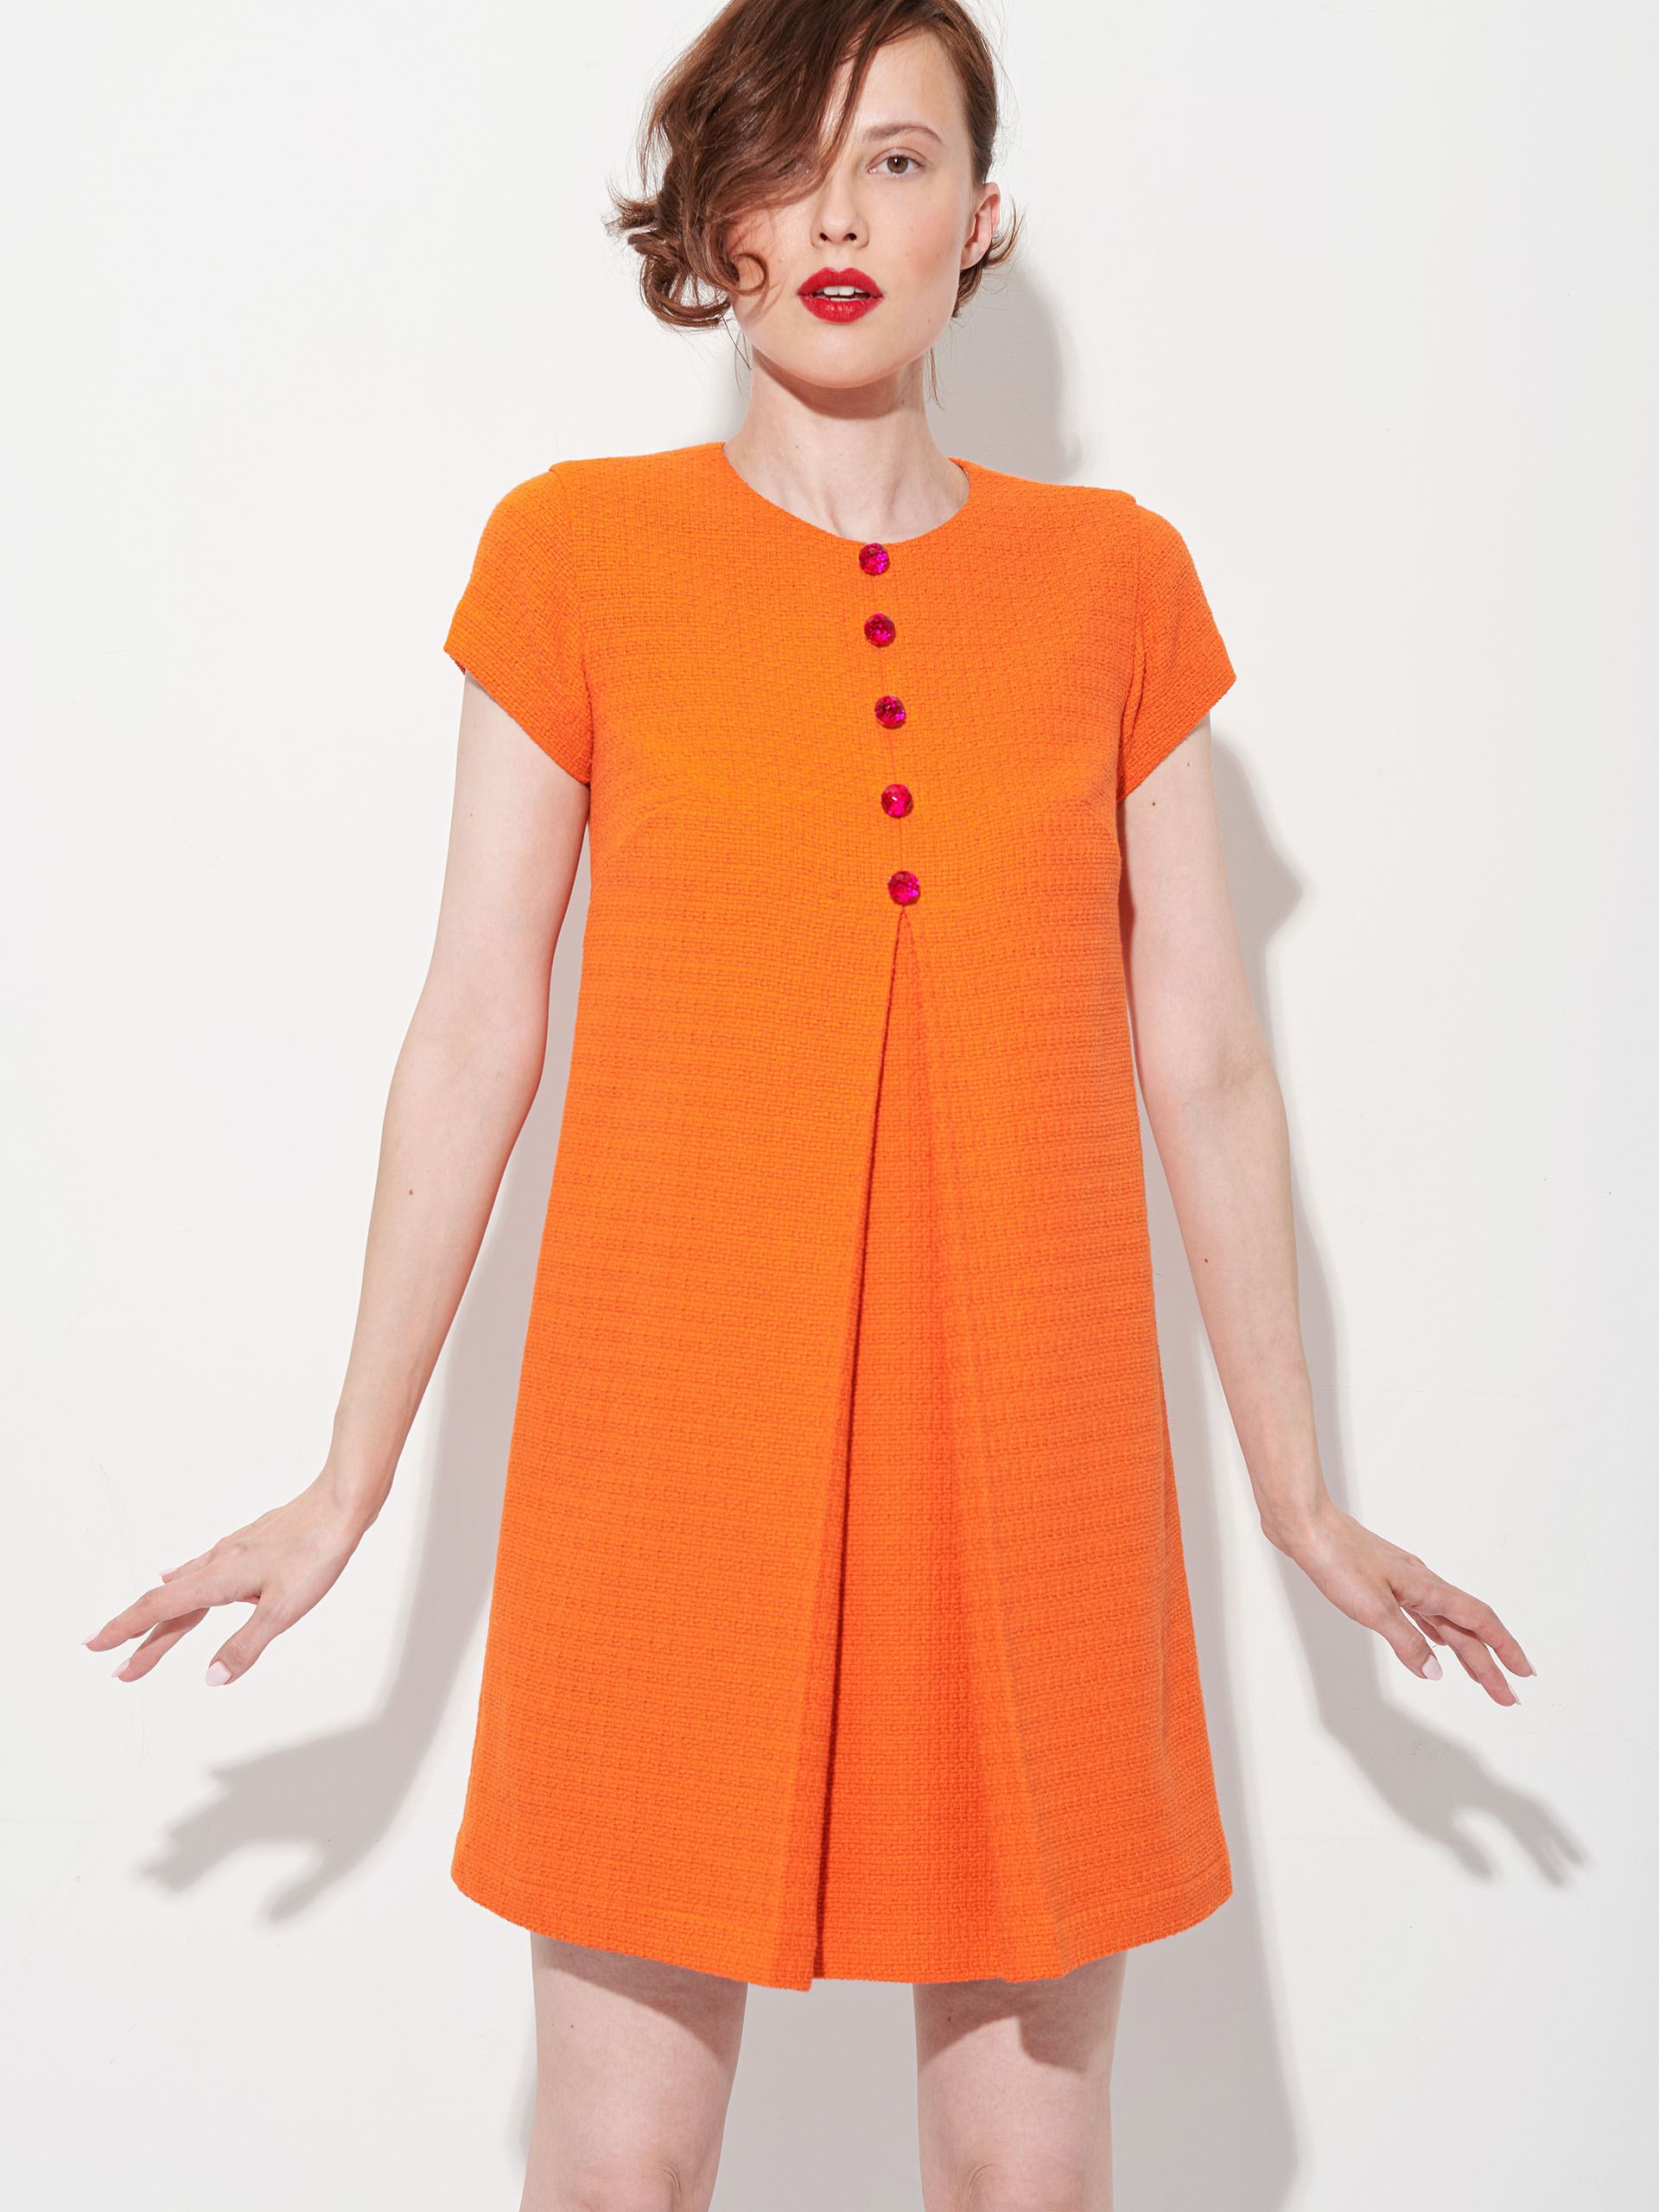 baby doll orange dress with buttons crop • Sassa Björg